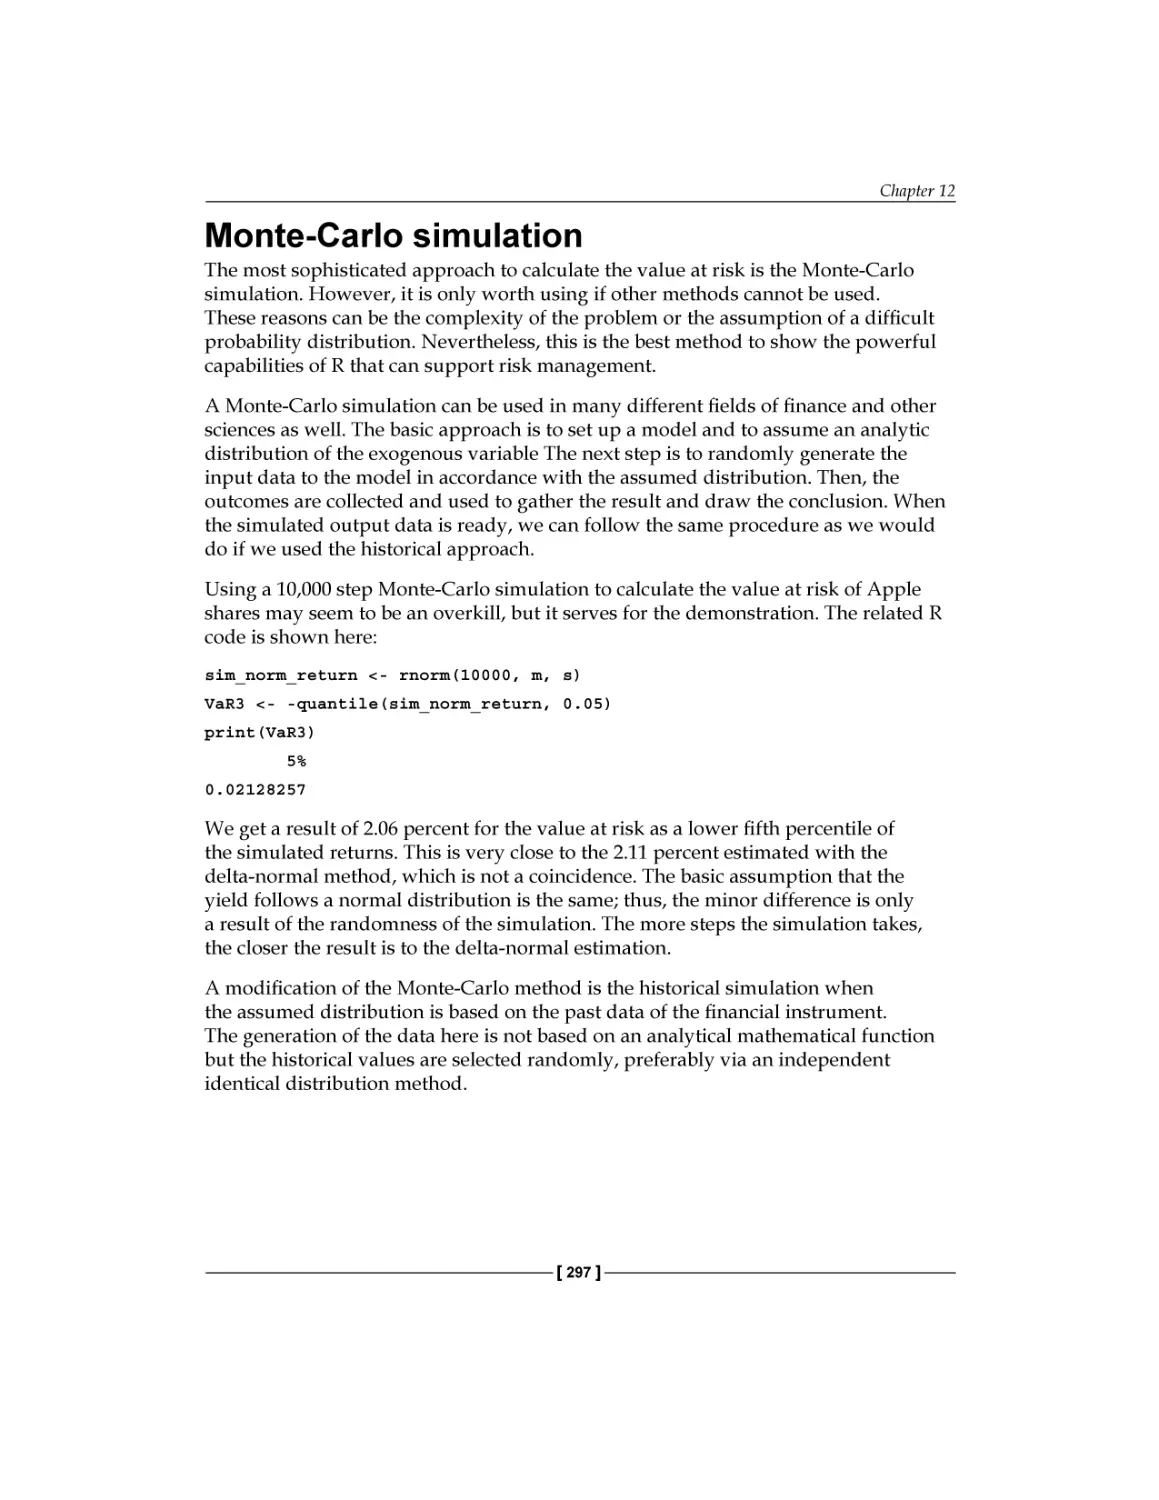 Monte-Carlo simulation